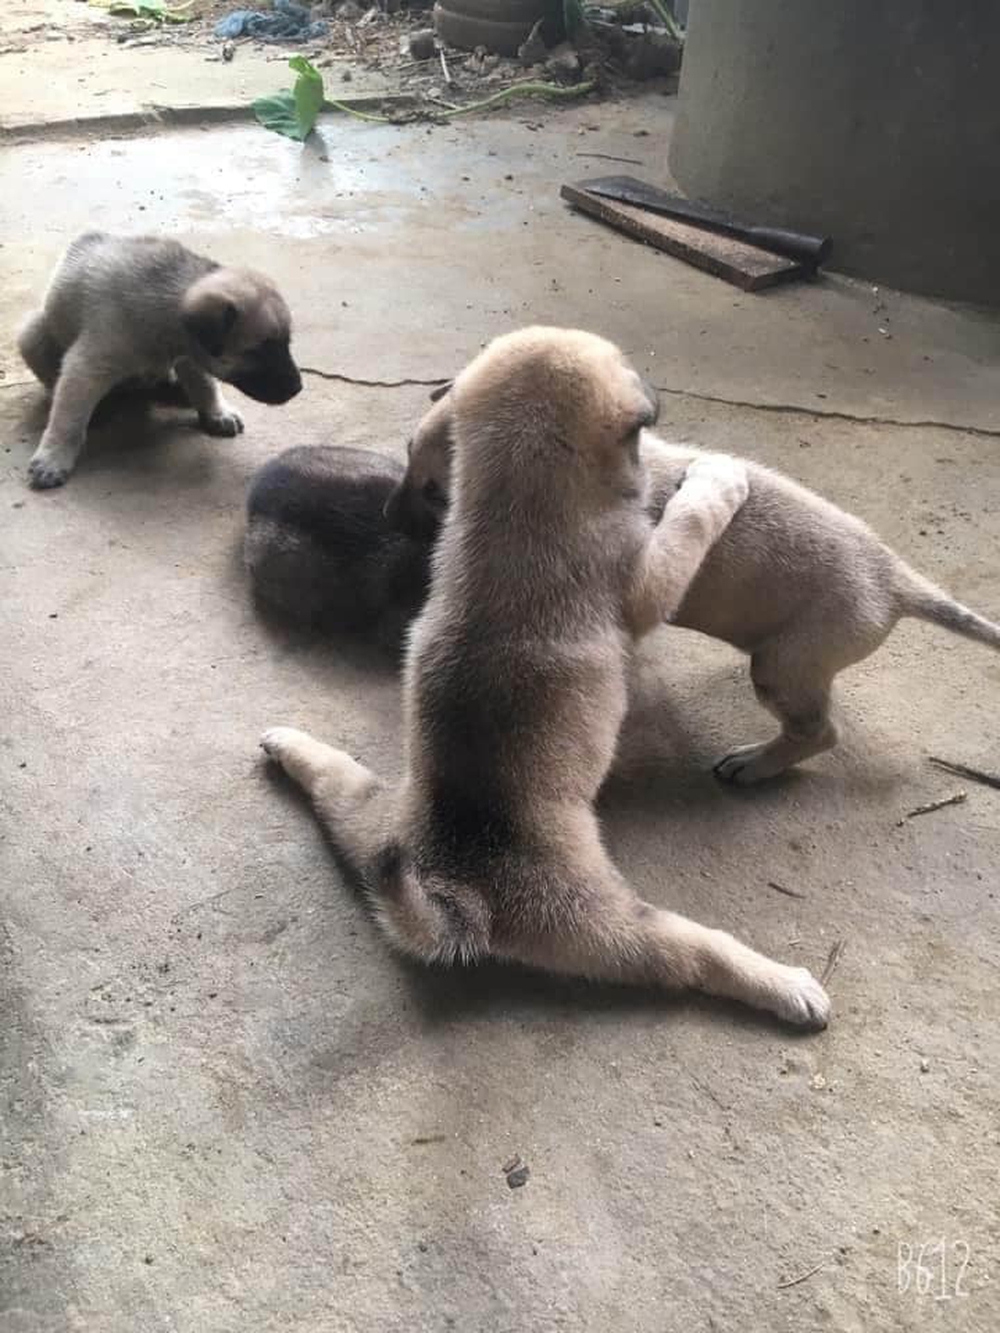 Chú chó con biểu diễn tuyệt kỹ xoạc chân khiến hội chị em ngỡ ngàng, xấu hổ vì đi tập yoga cũng không dẻo bằng em cún - Ảnh 2.